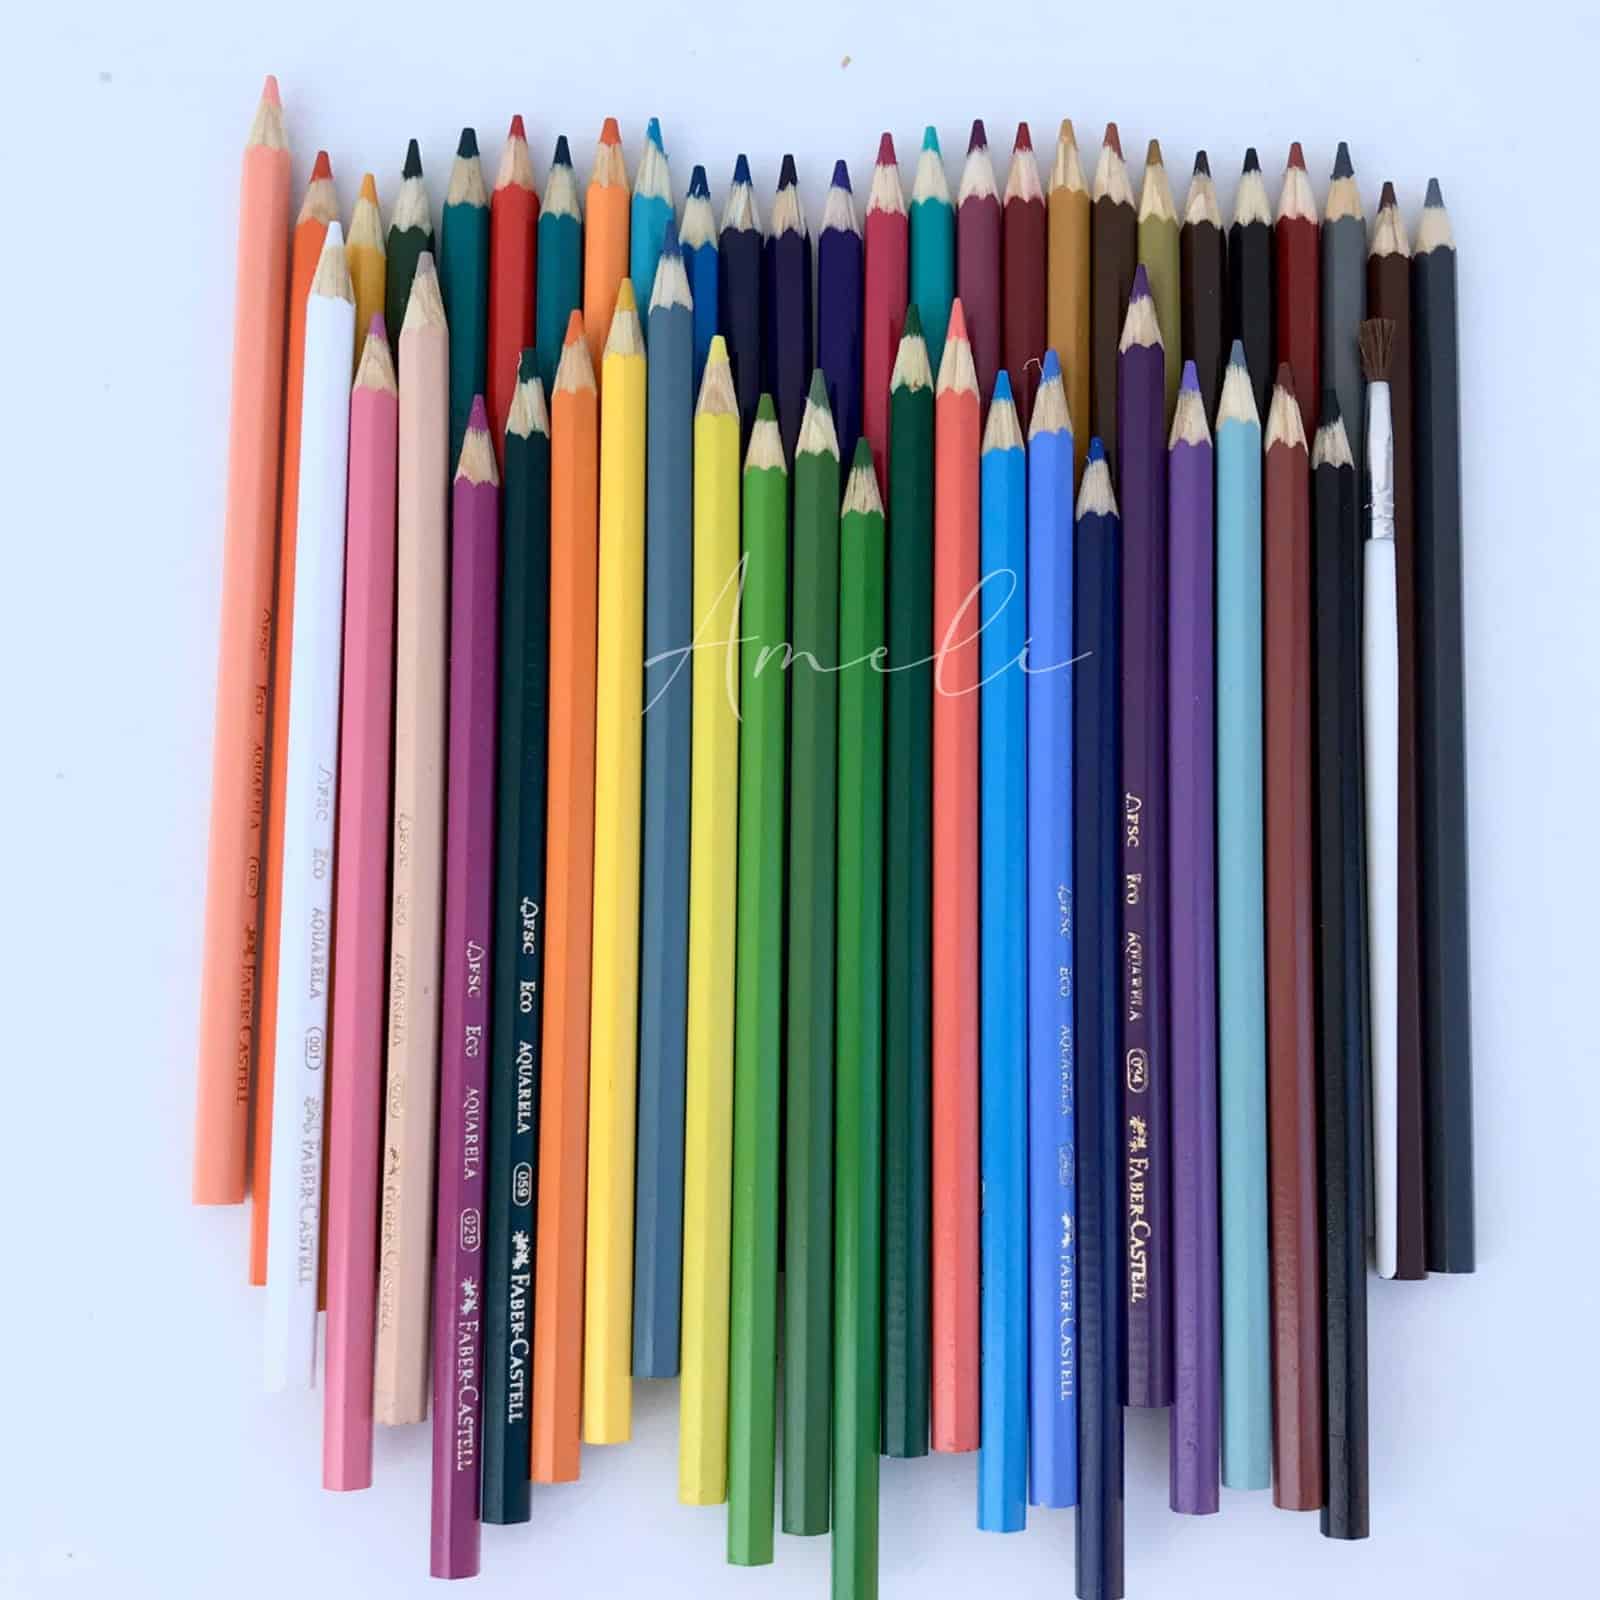 Lápices de colores Acuarelables Faber-Castell – Ameli Papeleria